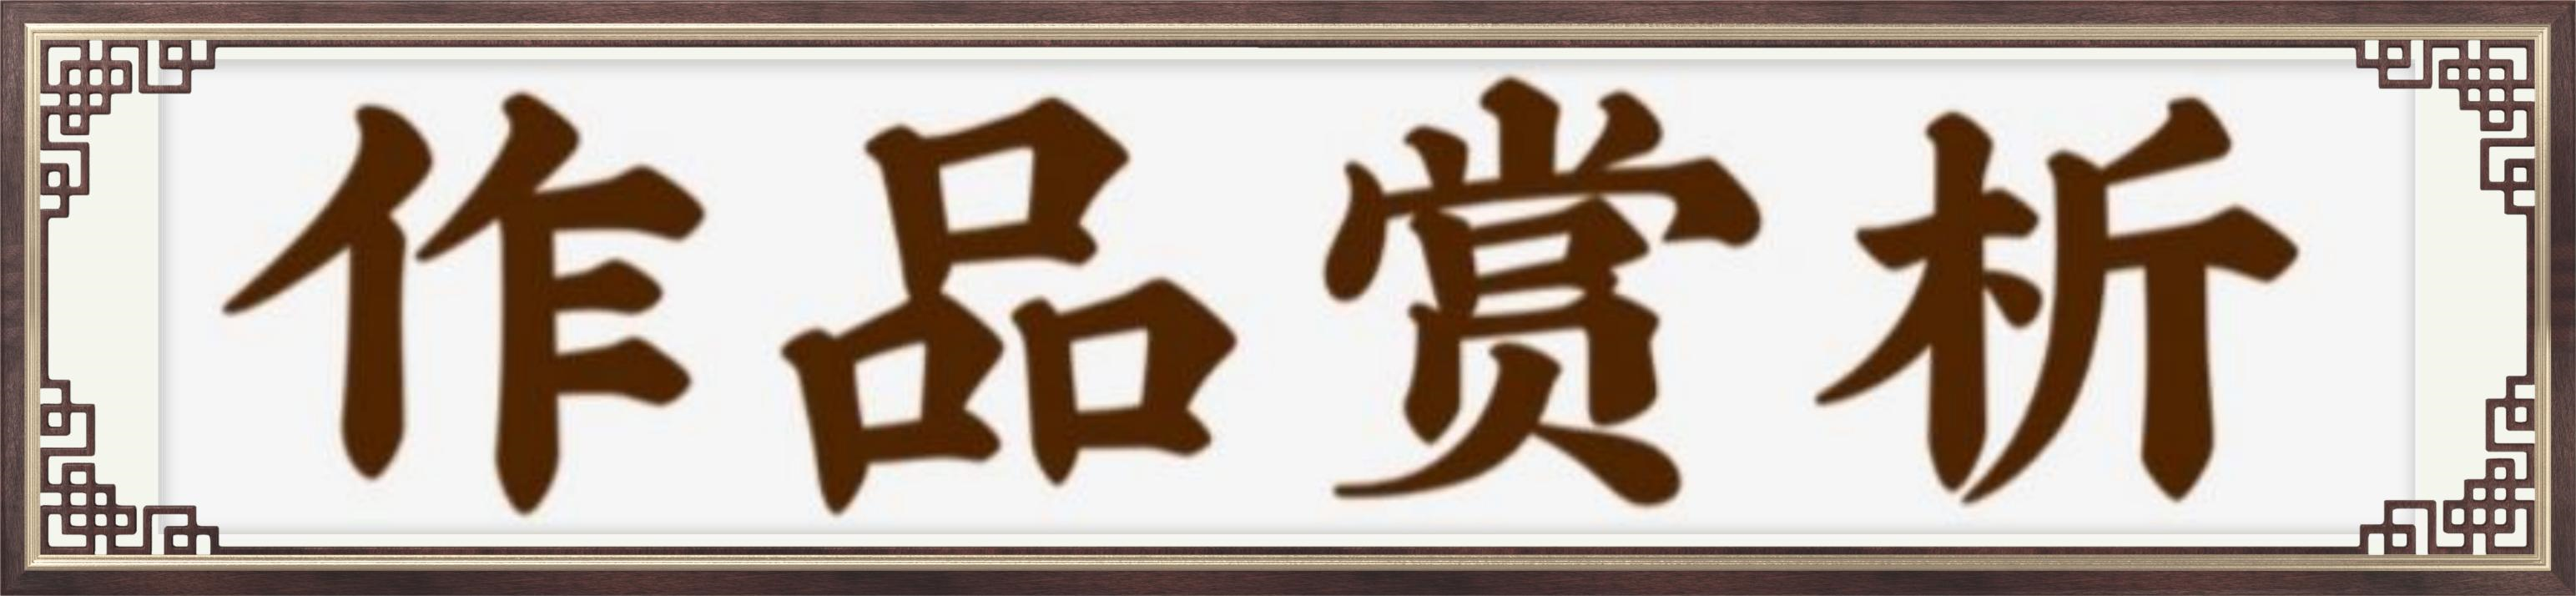 中国艺术传承形象大使司徒惠霞——献礼建军95周年-衡水热线网